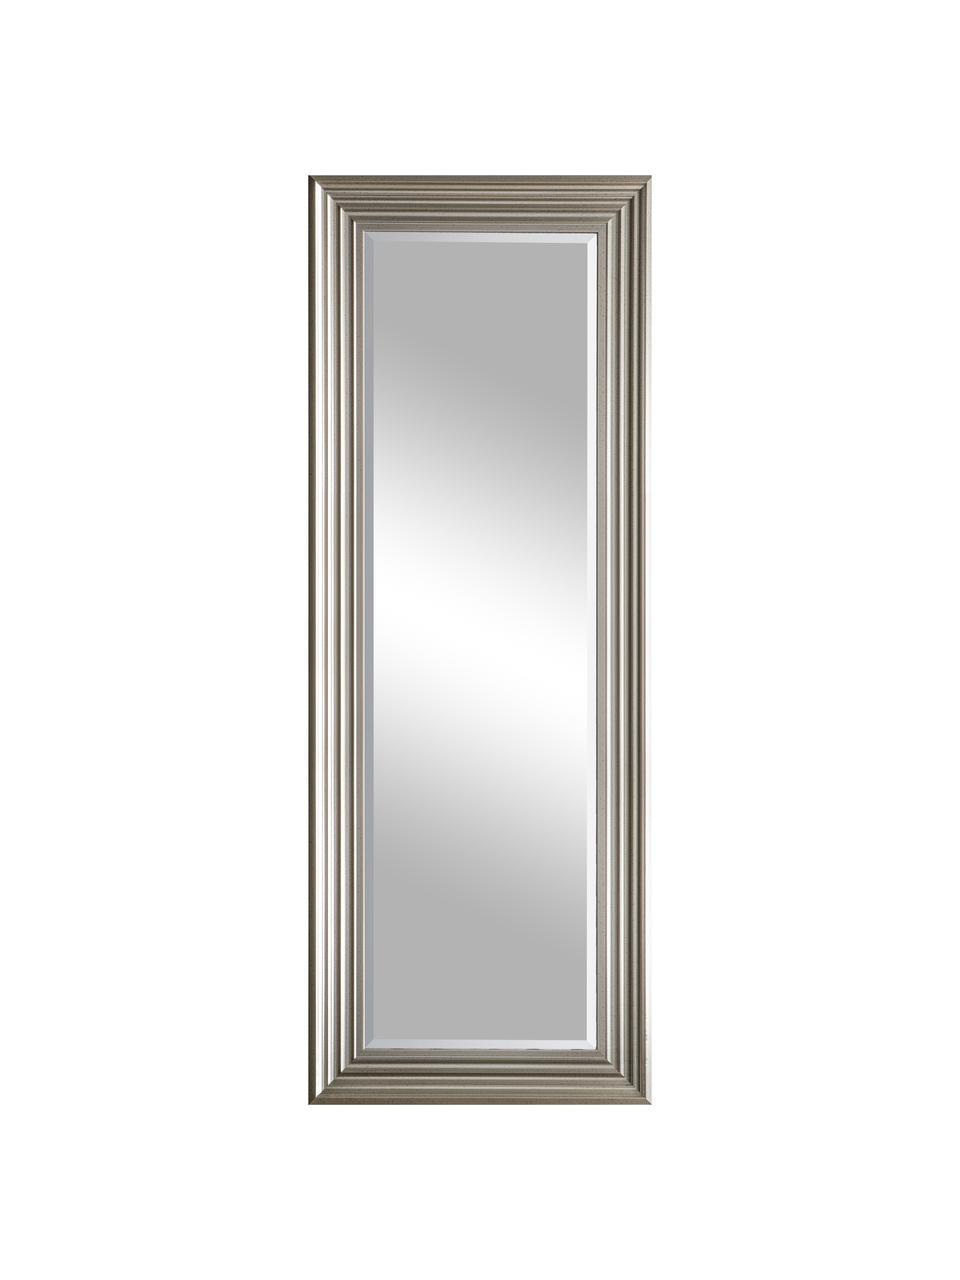 Eckiger Wandspiegel Haylen mit silbernem Rahmen, Rahmen: Kunststoff, Spiegelfläche: Spiegelglas, Silberfarben, B 48 x H 132 cm